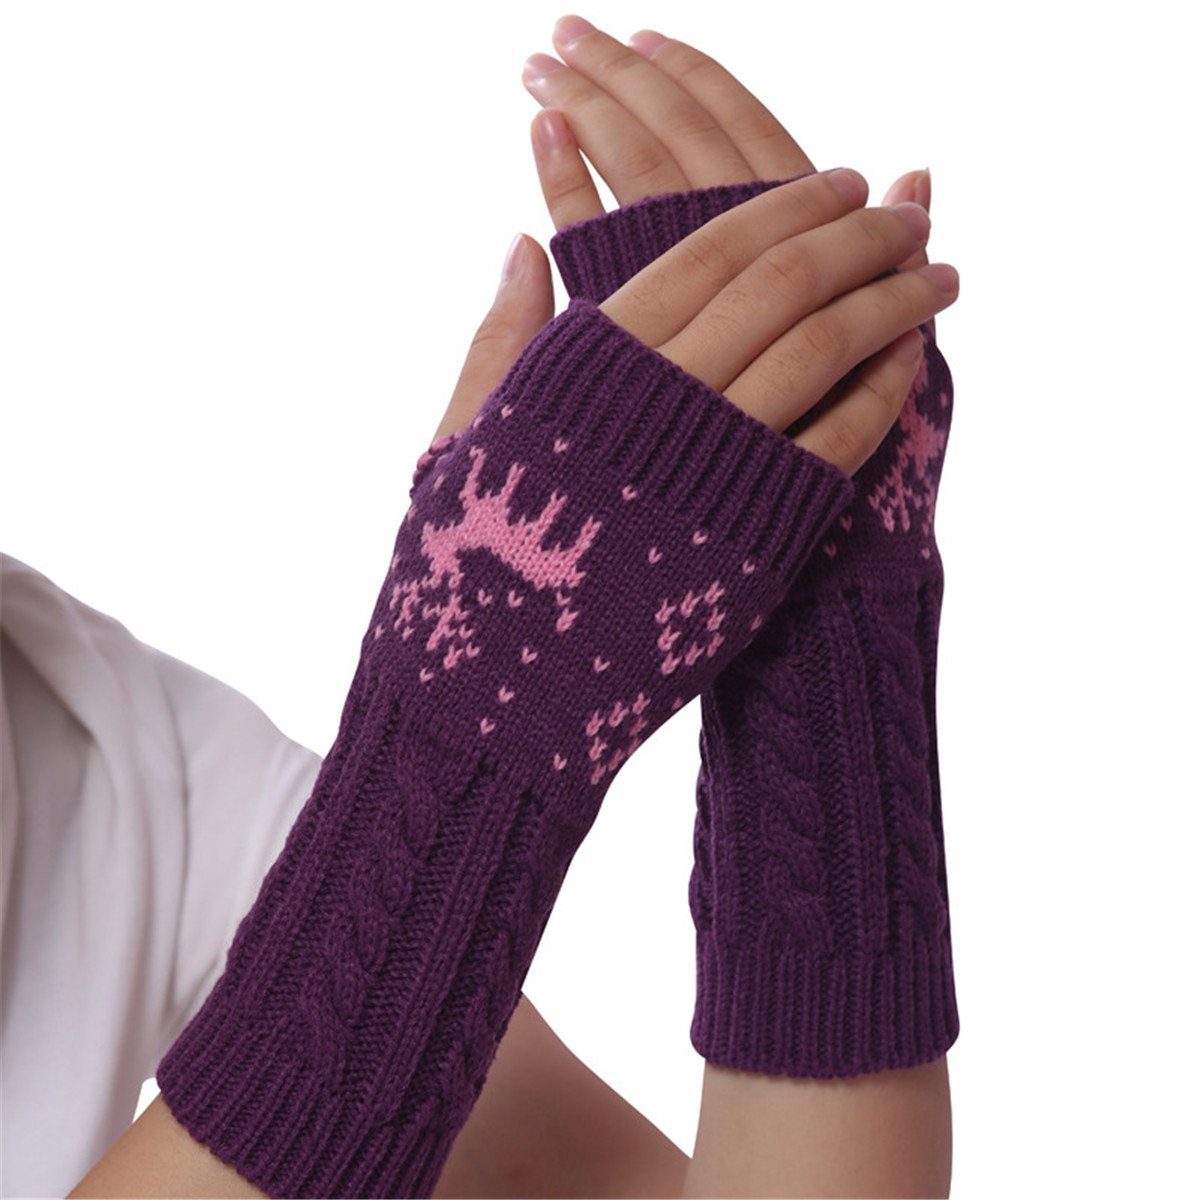 Die Sterne Rentier-Design Lila Handschuhe mit fingerlose Trikot-Handschuhe